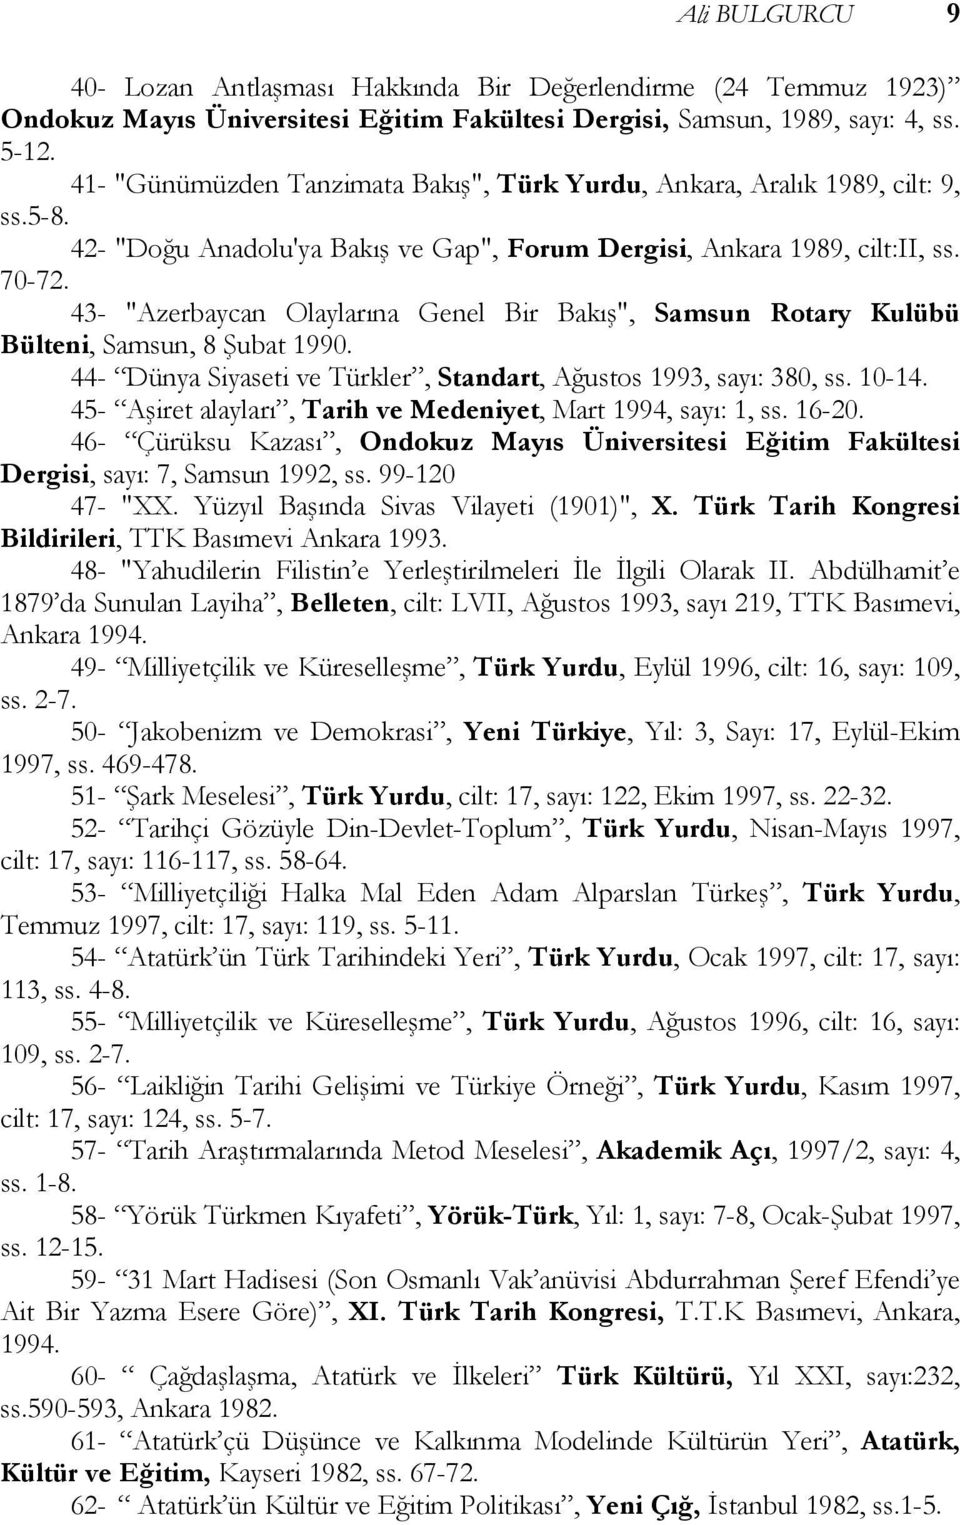 43- "Azerbaycan Olaylarına Genel Bir Bakış", Samsun Rotary Kulübü Bülteni, Samsun, 8 Şubat 1990. 44- Dünya Siyaseti ve Türkler, Standart, Ağustos 1993, sayı: 380, ss. 10-14.